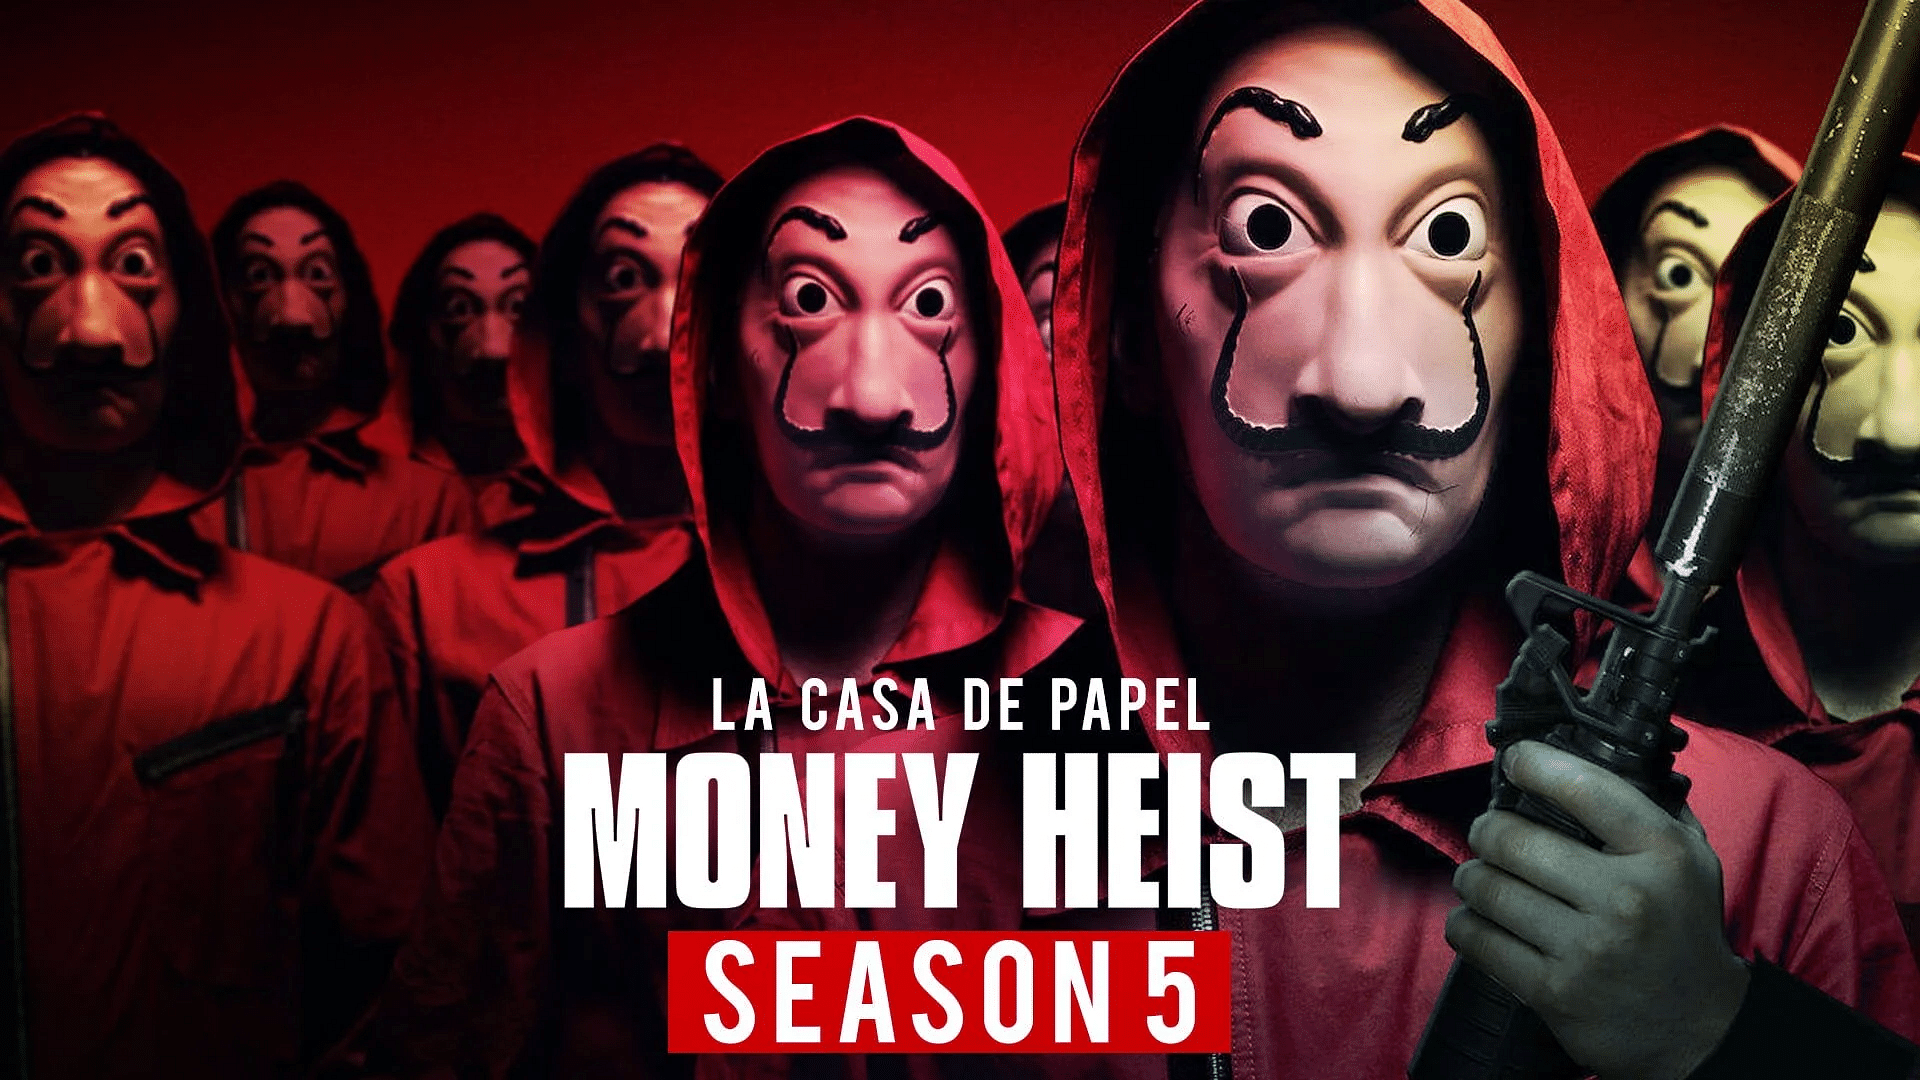 <div class="paragraphs"><p>Money Heist Season 5 premieres on Netflix.</p></div>